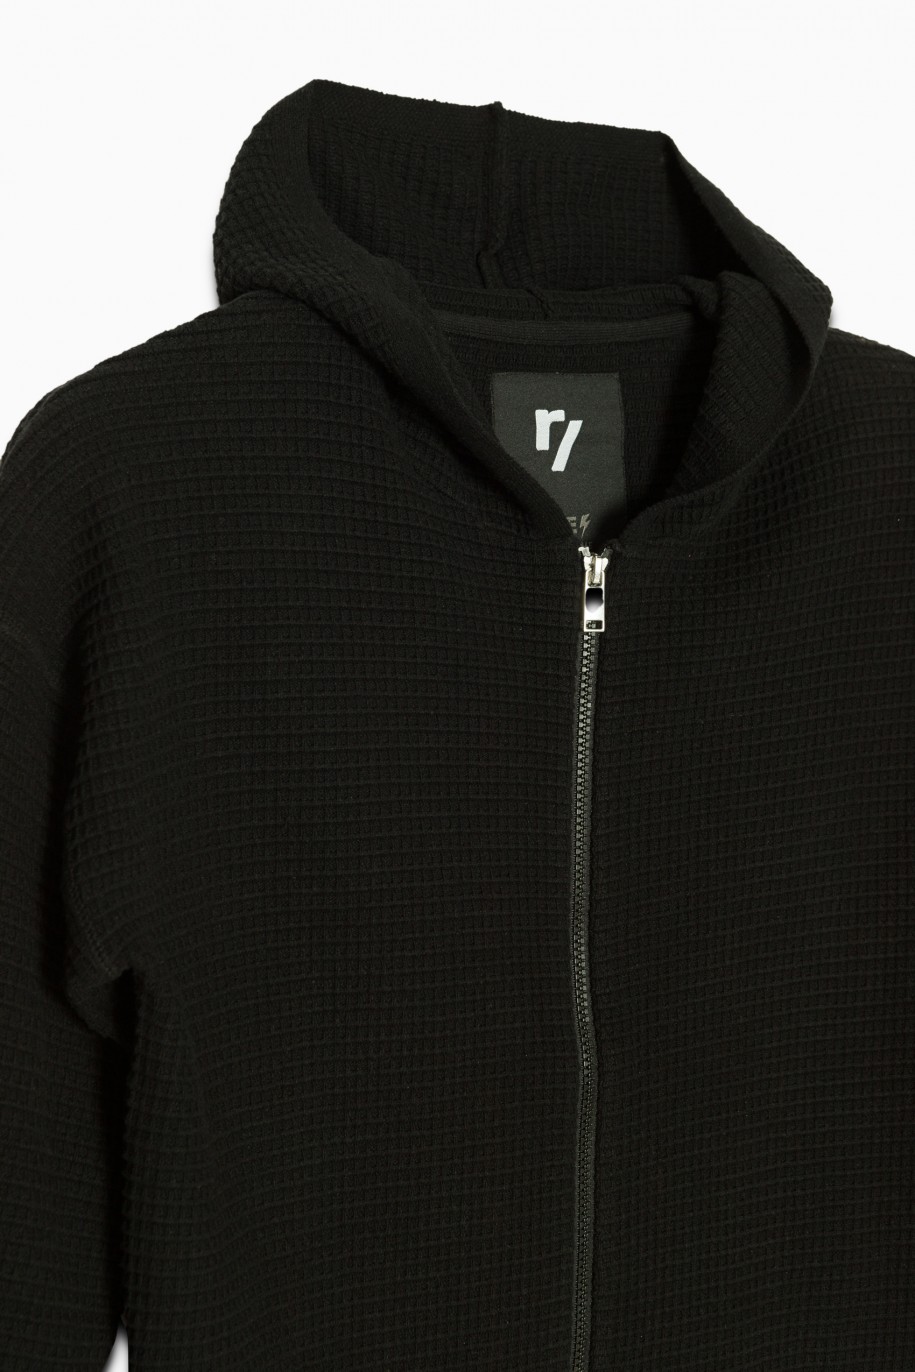 Czarny rozpinany sweter z kapturem - 36591